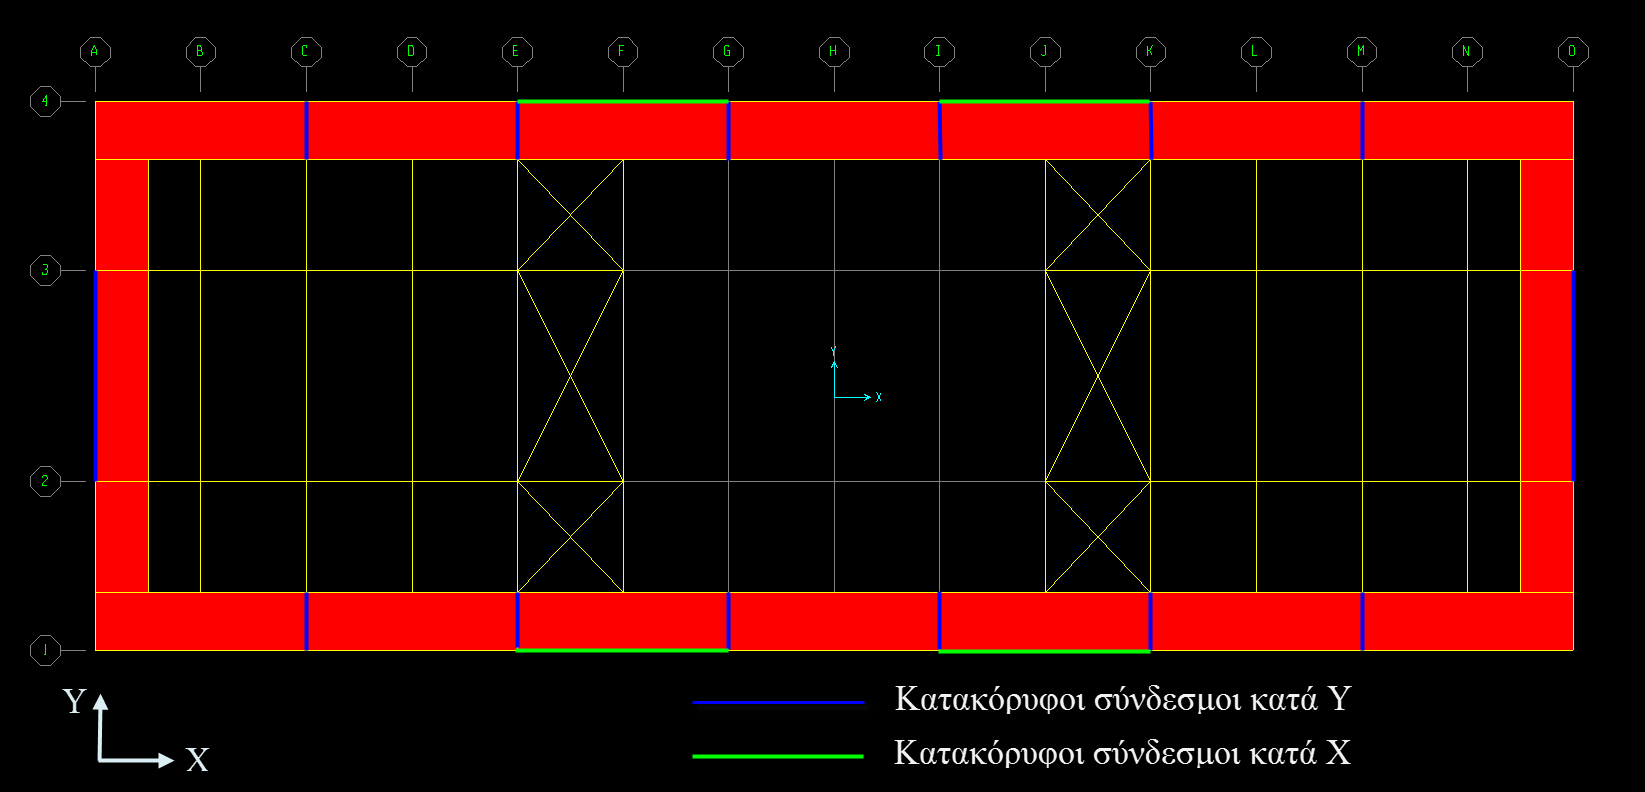 ζεύγη κατακόρυφων συνδέσμων δυσκαμψίας της μορφής που φαίνεται στα Σχήματα 2.13(β) και 2.6.